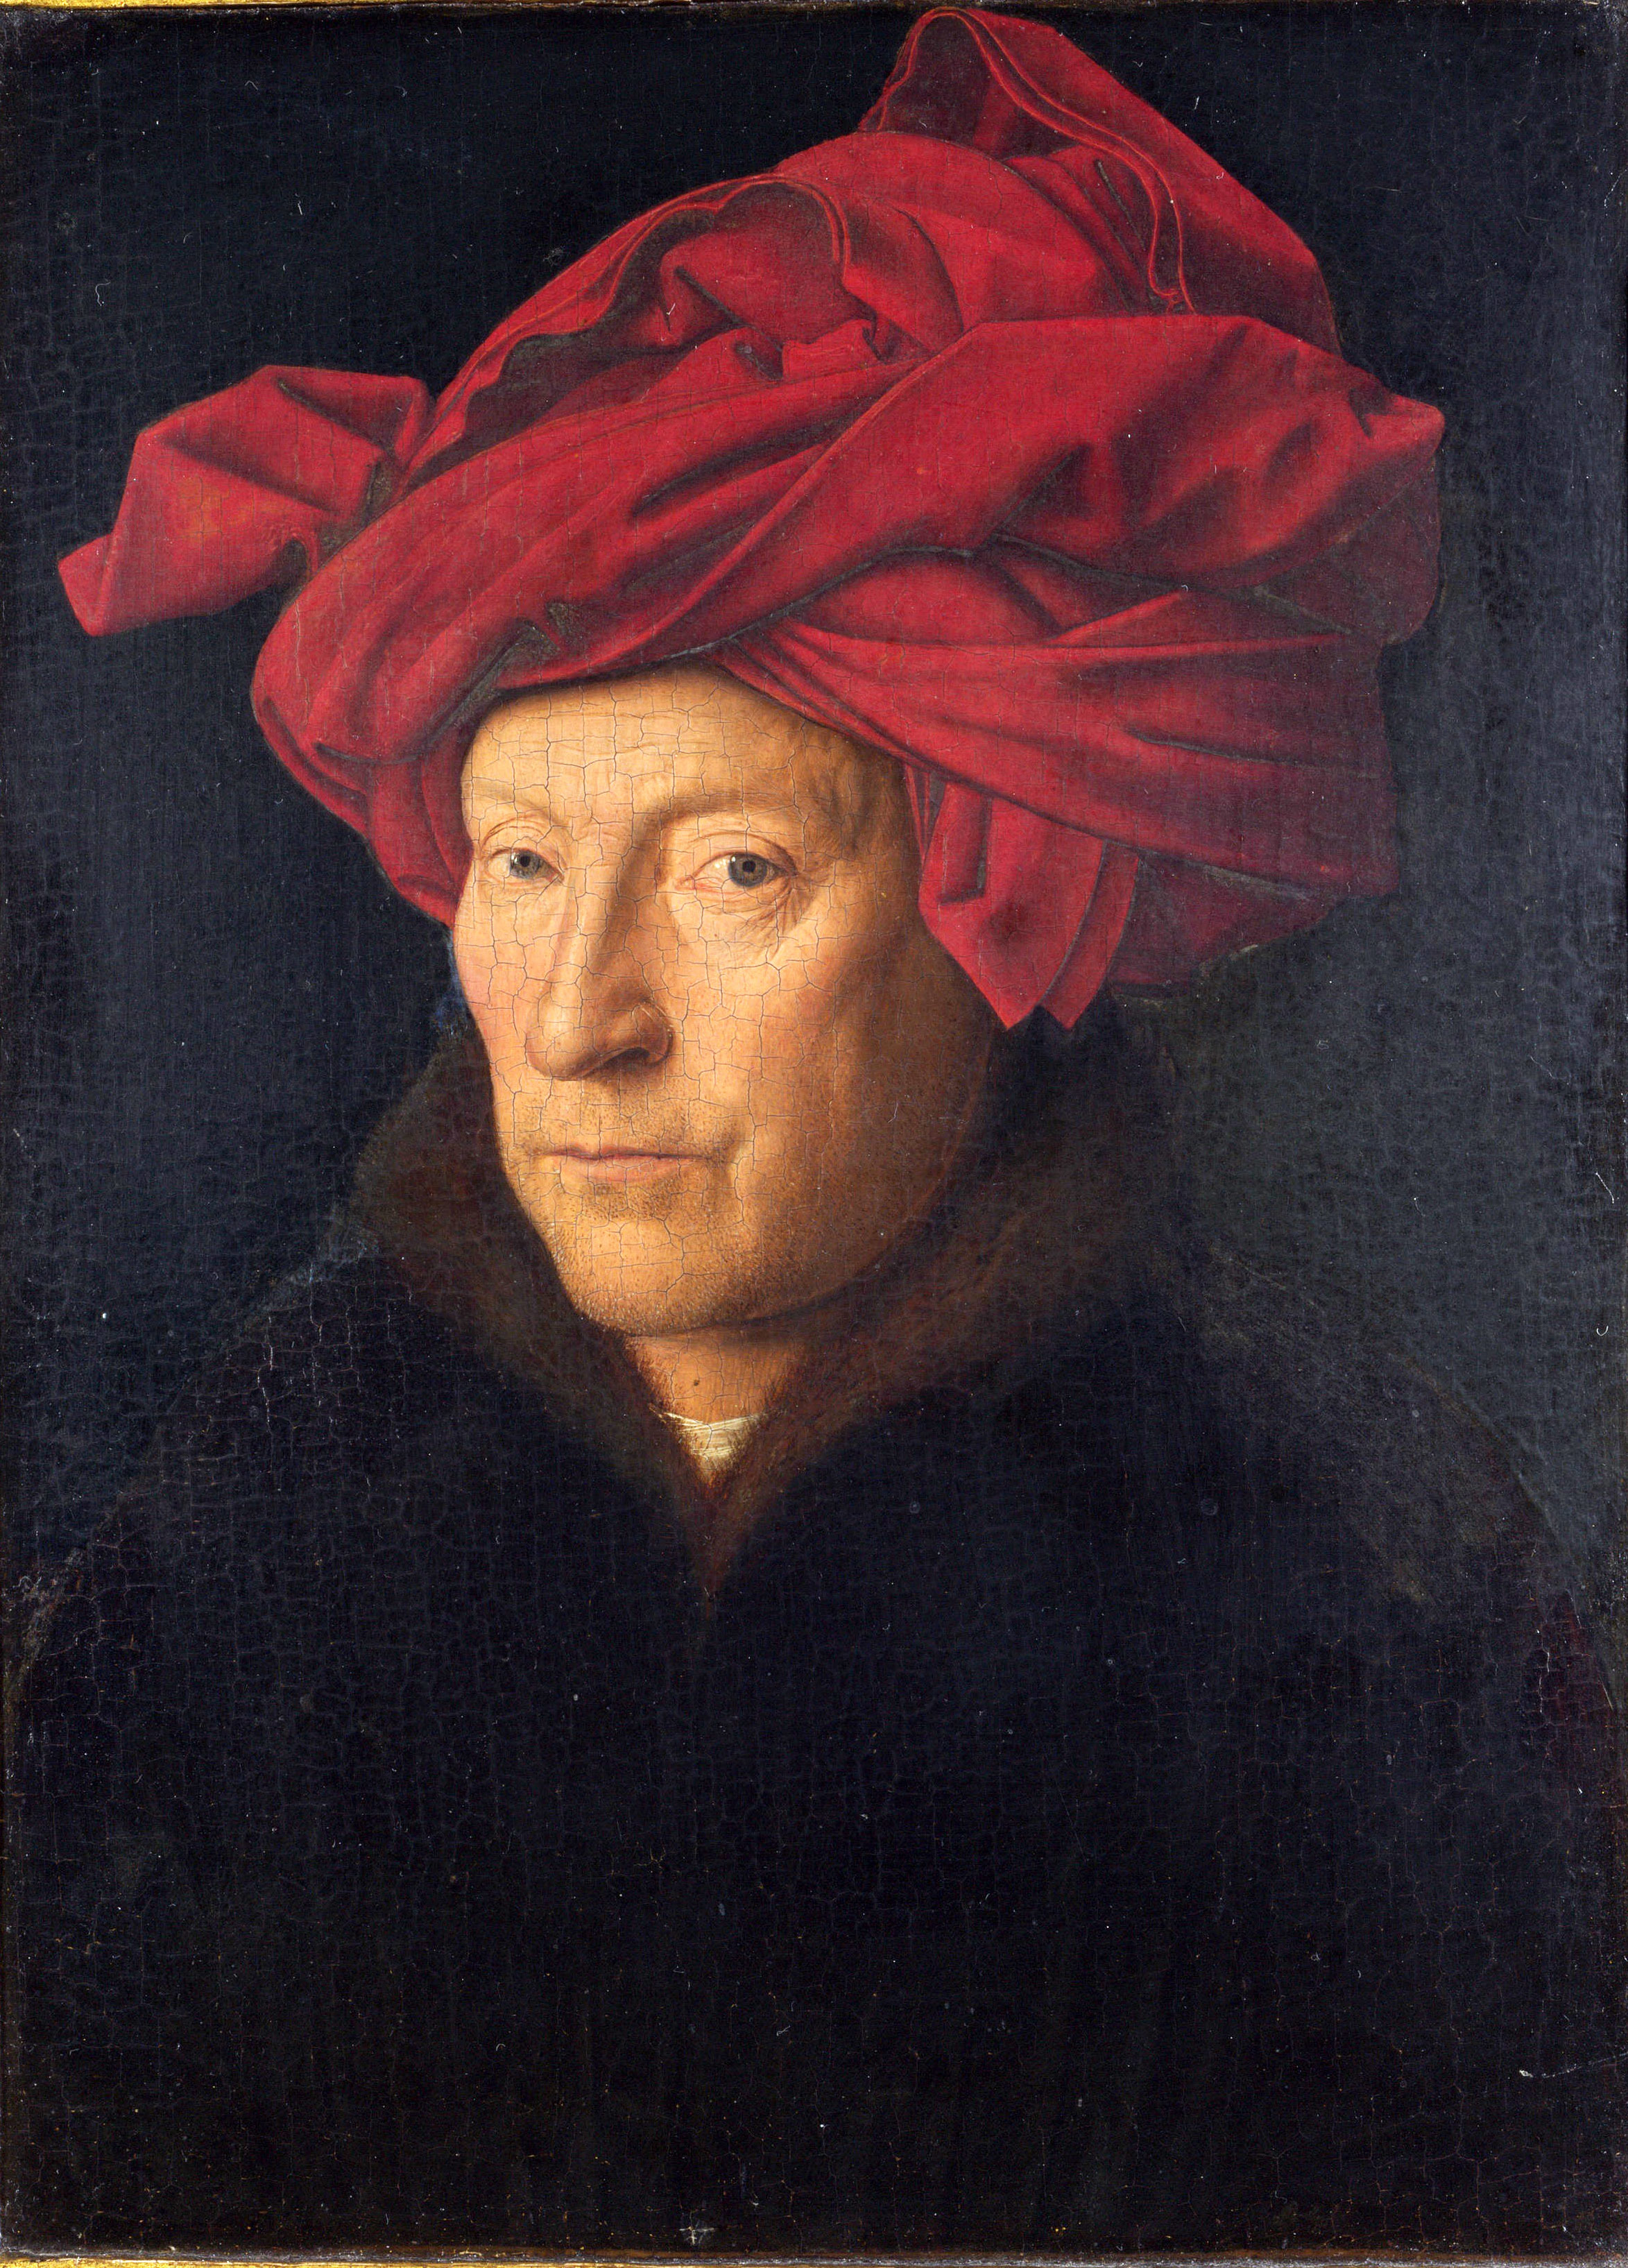 Portrait of a Man by Jan van Eyck